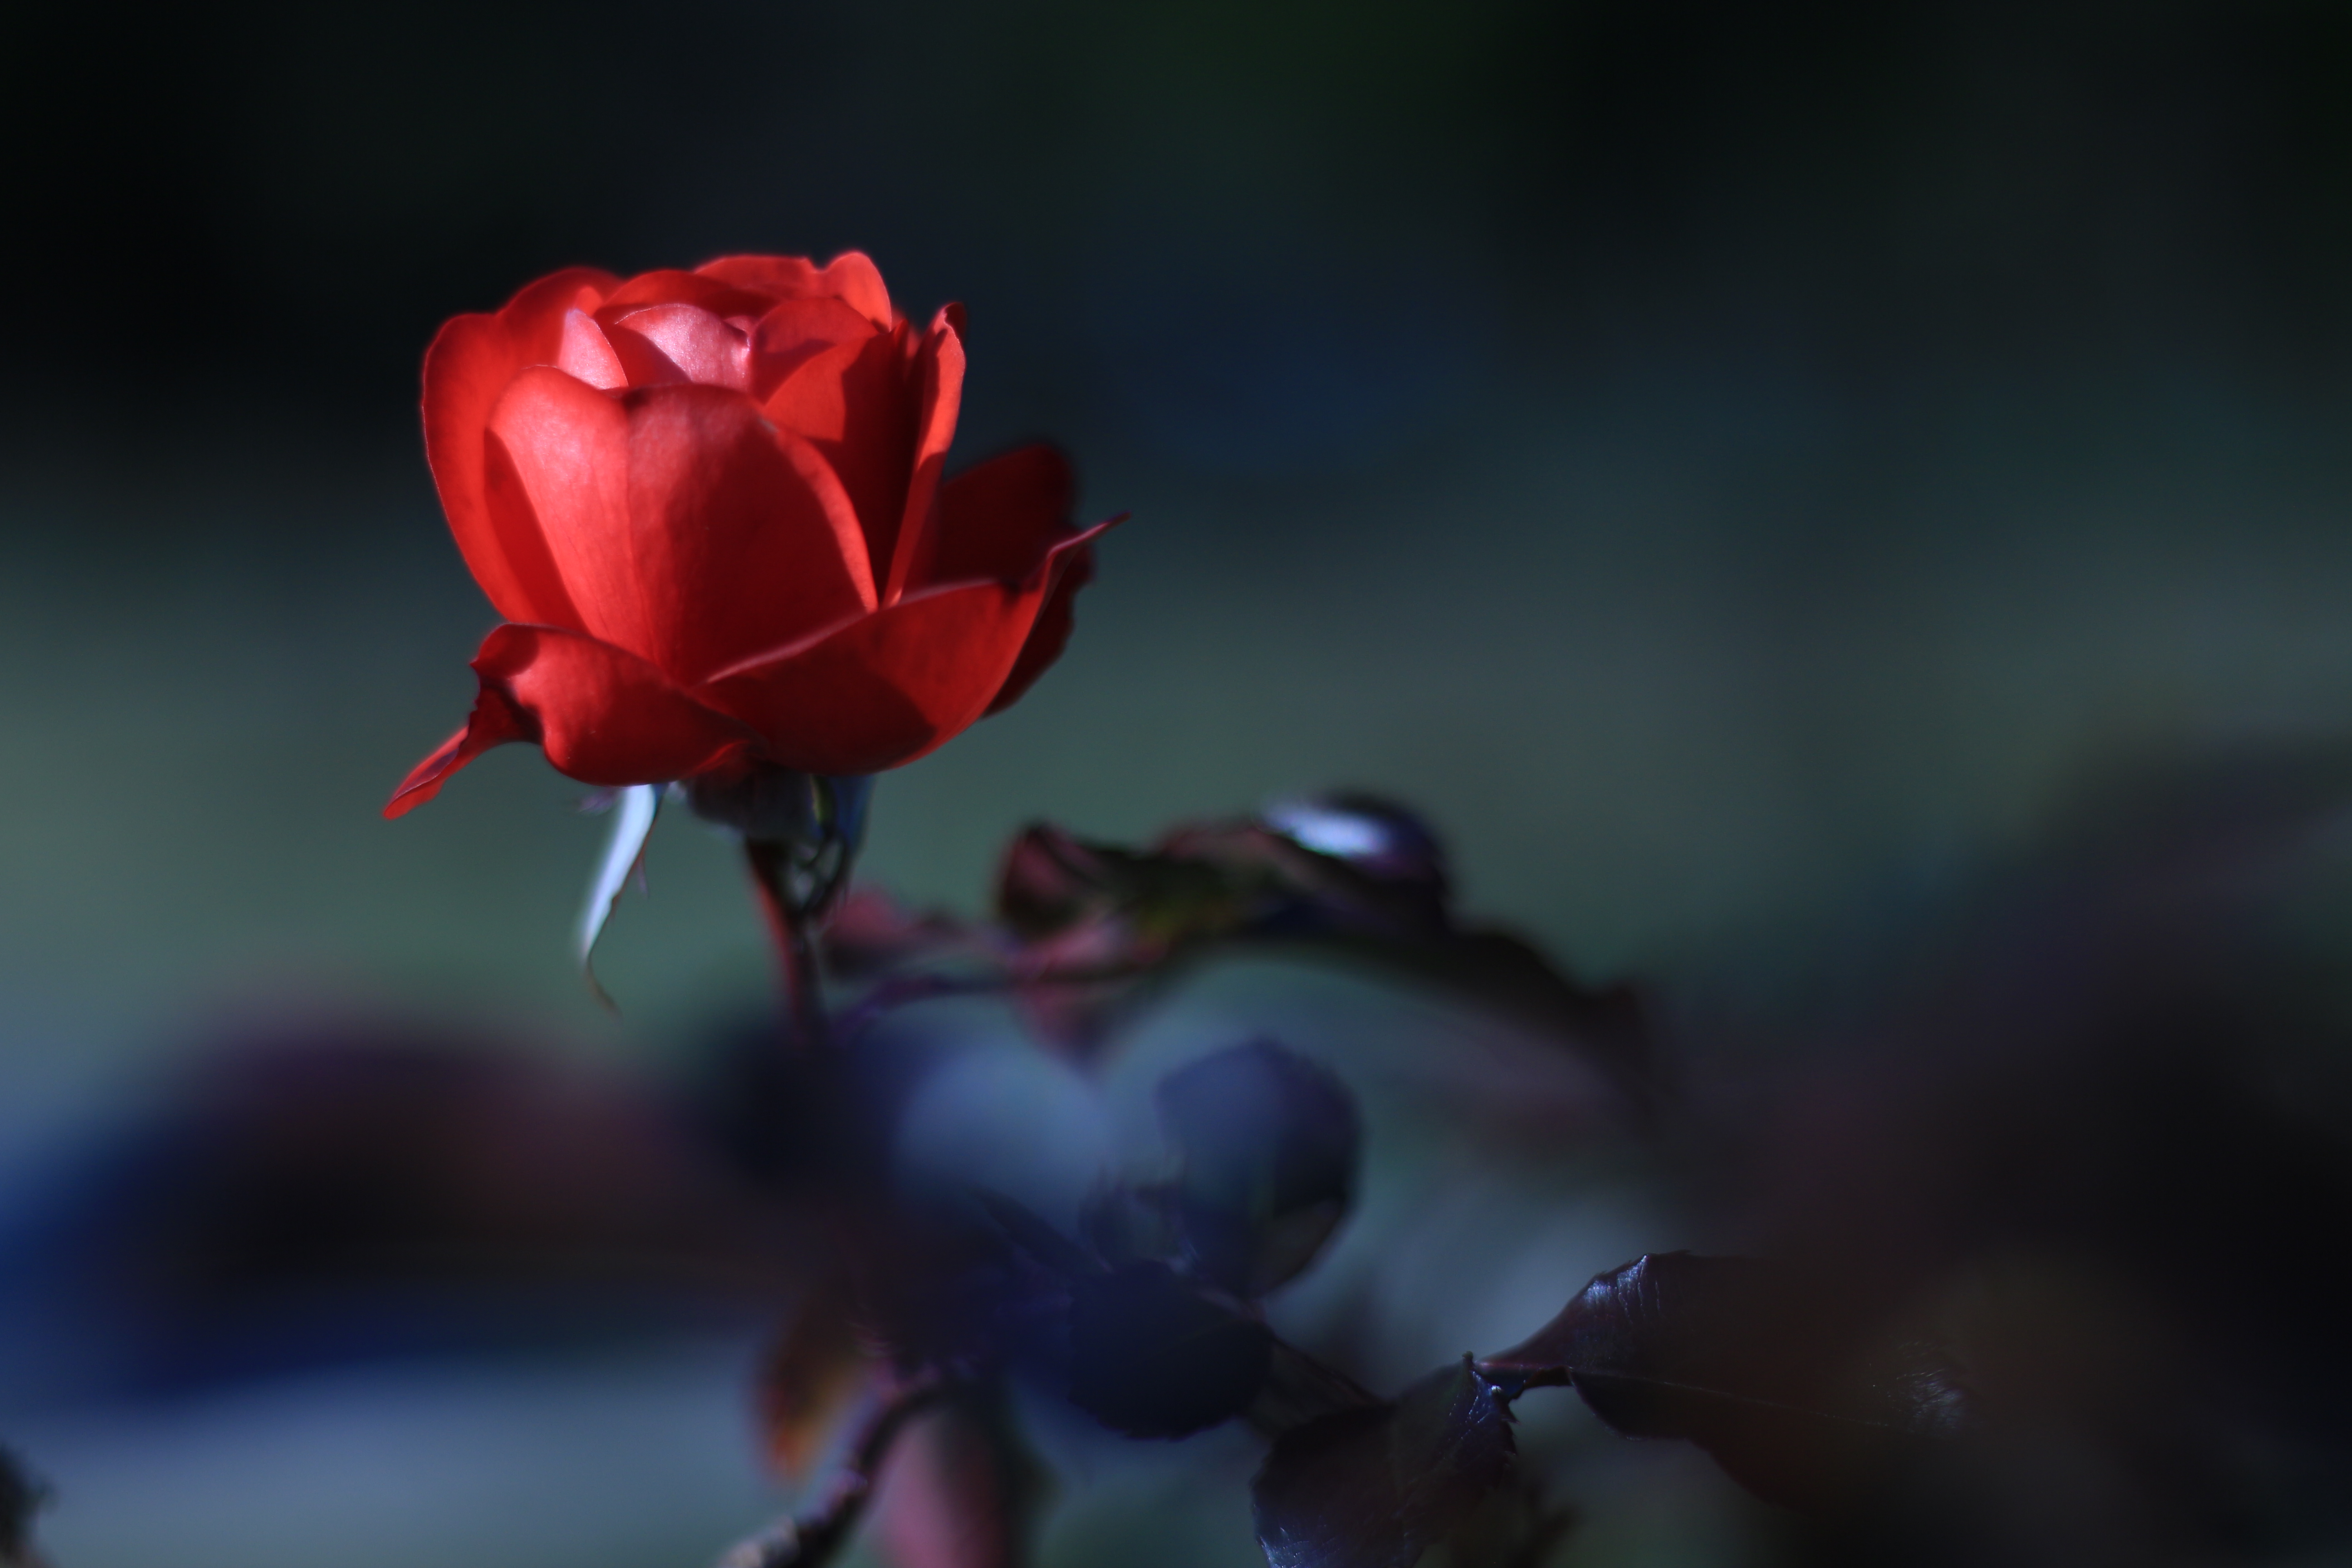 初級編 情熱的な真っ赤な薔薇 赤いお花はこう撮ろう サンプル画像枚以上 カメラ女子必見 お花の撮り方